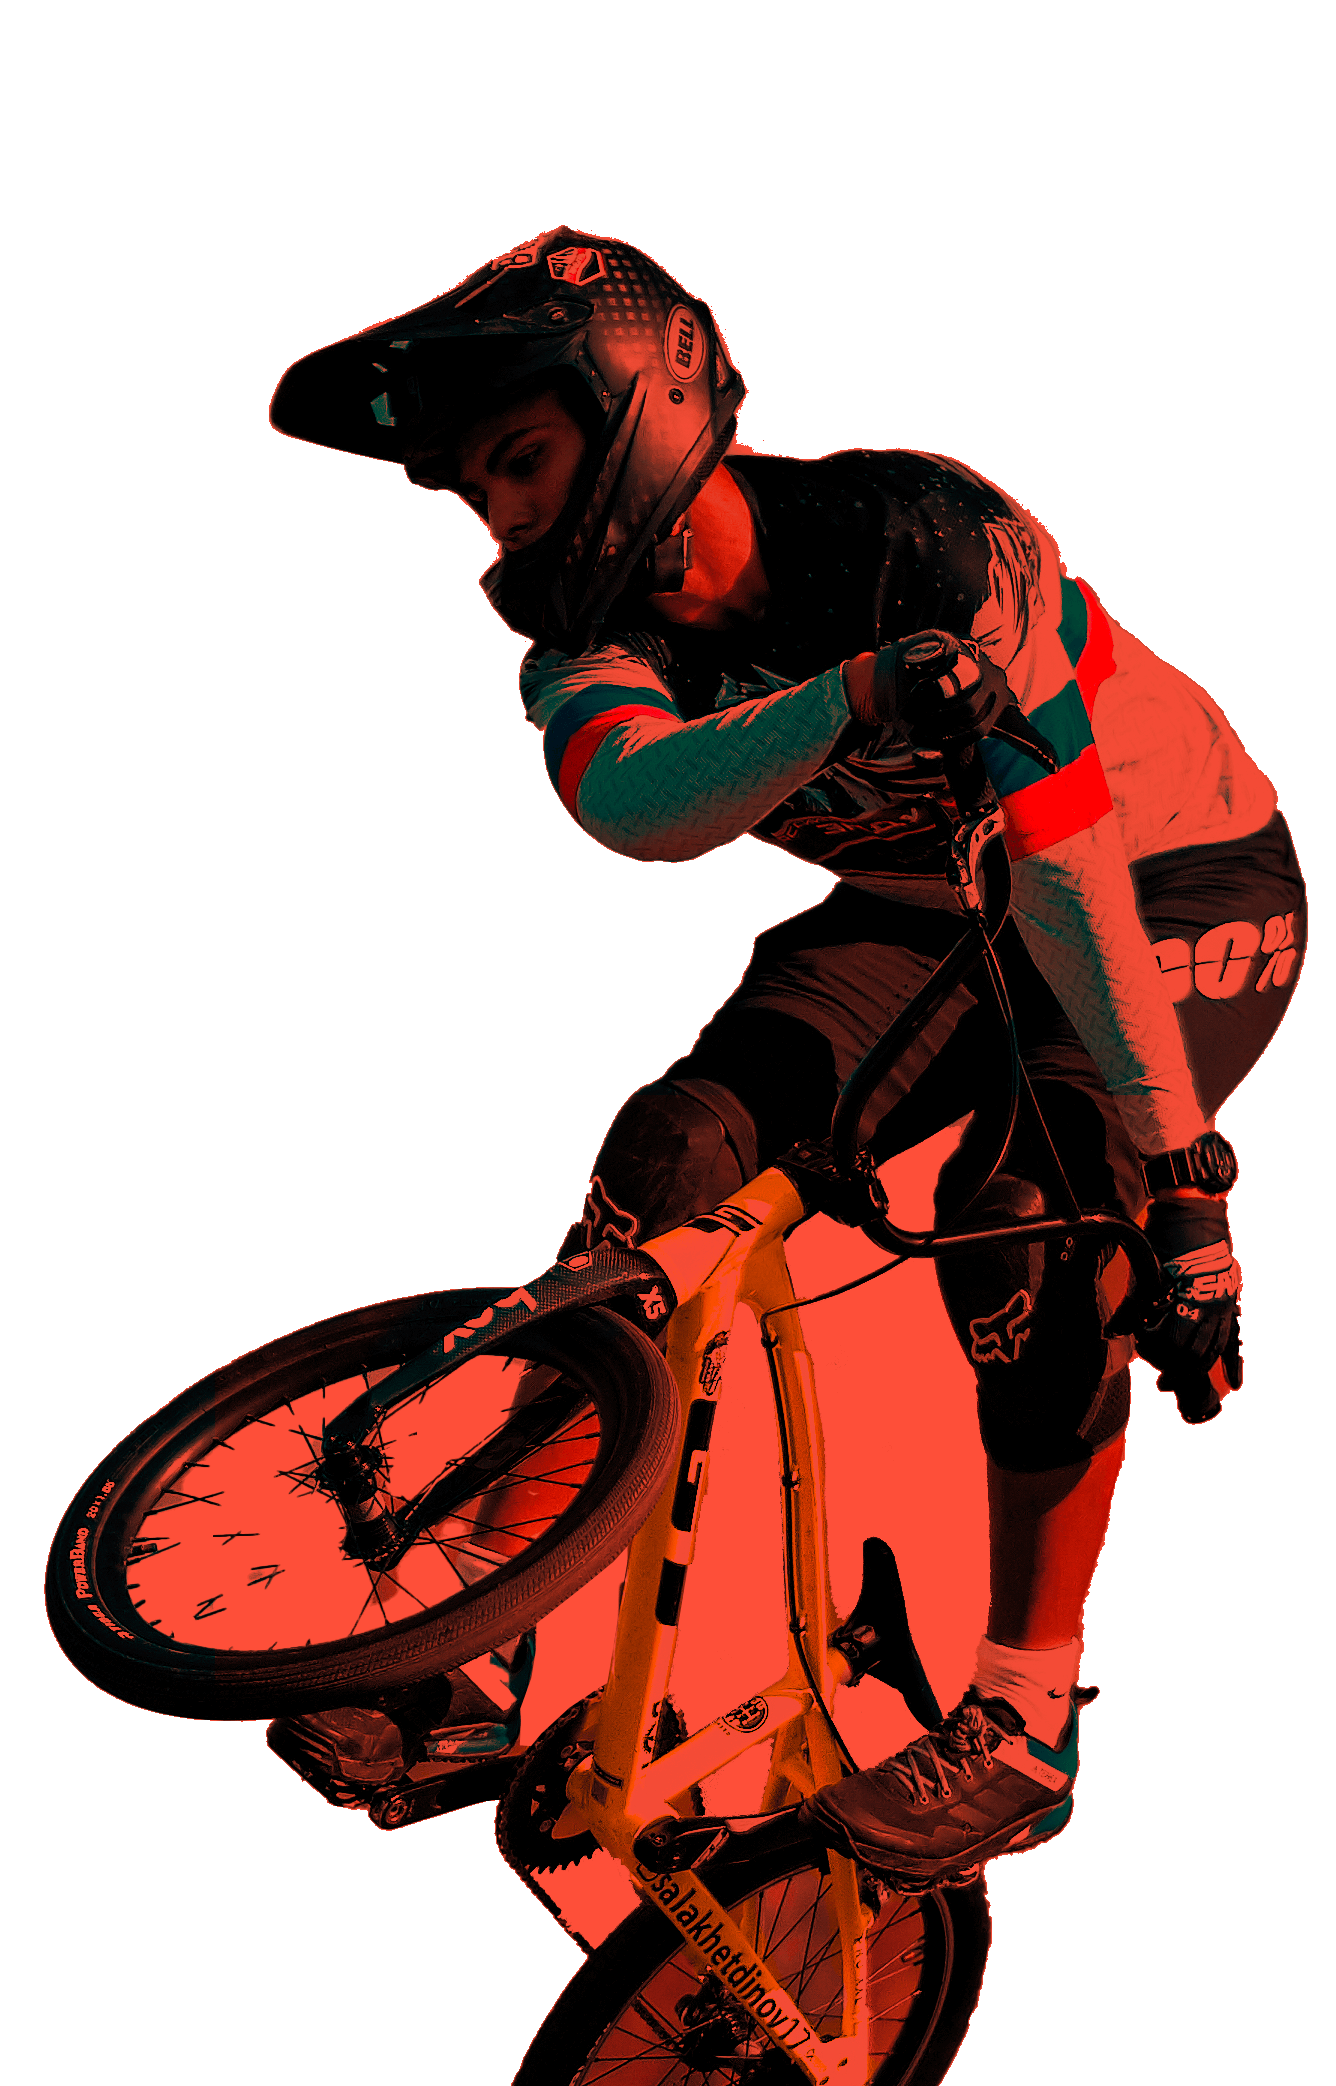 En la foto, un ciclista BMX realiza trucos. Lleva un casco y distintas protecciones típicas de la disciplina.